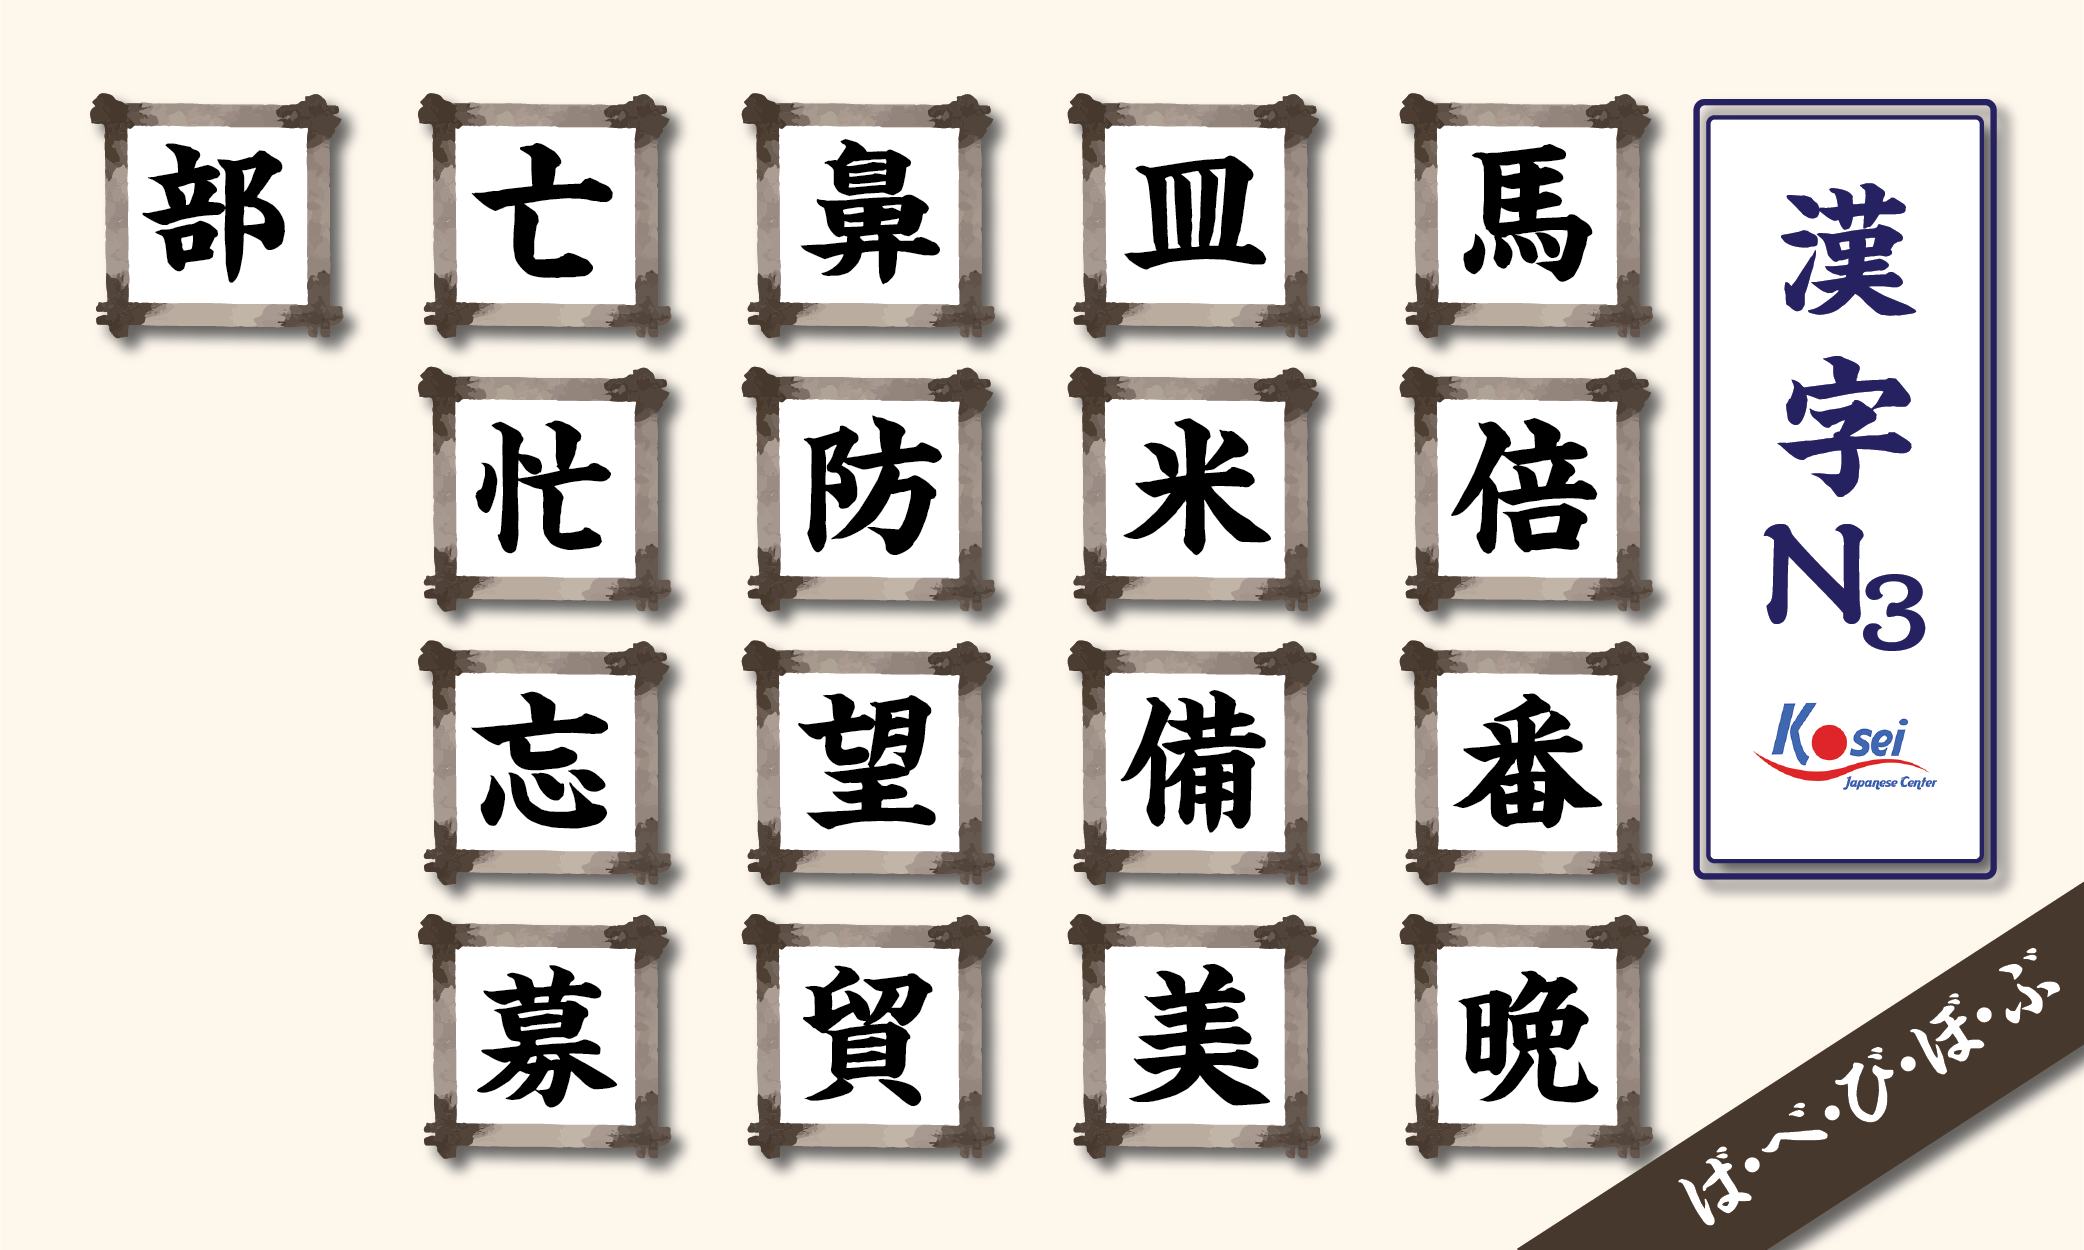 Tổng hợp Kanji N3 theo âm on: hàng B